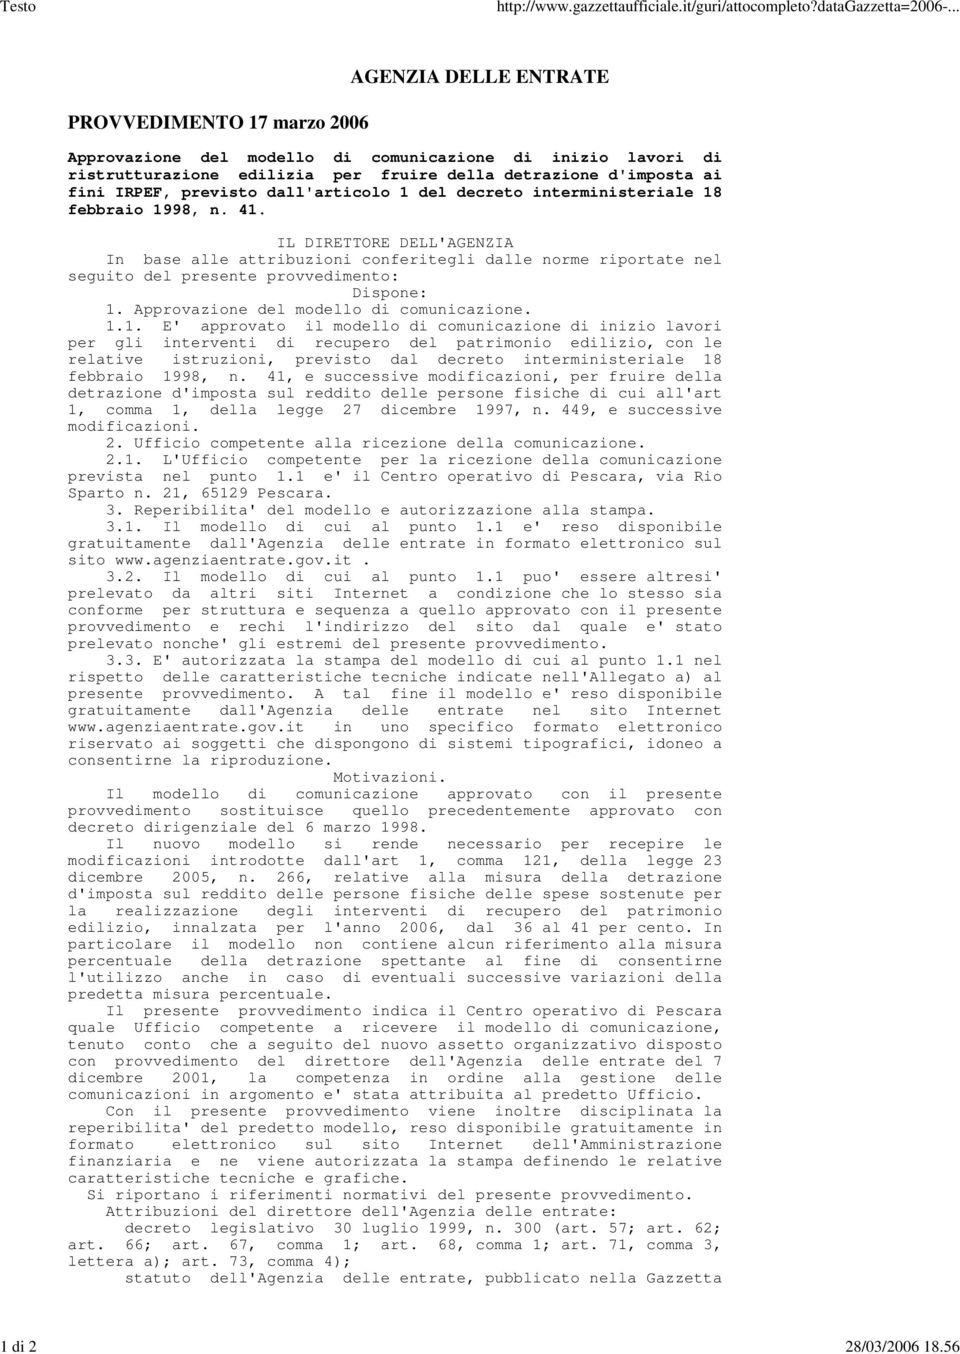 previsto dall'articolo 1 del decreto interministeriale 18 febbraio 1998, n. 41.